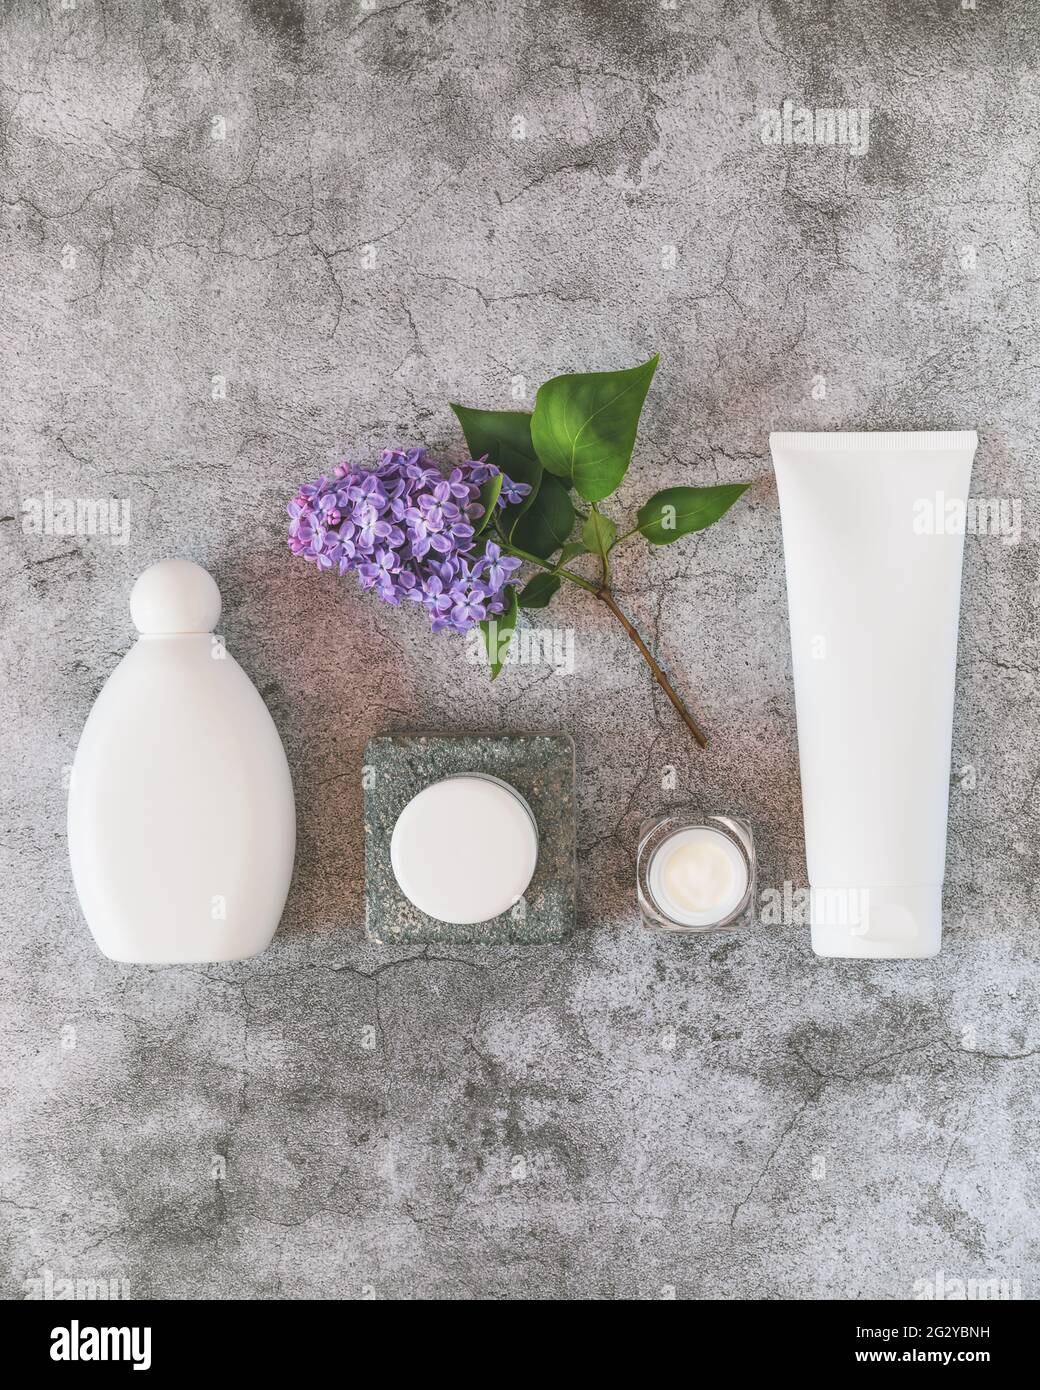 Composición natural del producto de belleza con botella, tubo y tarro de plástico blanco con ramita de lila sobre un fondo gris texturizado Foto de stock